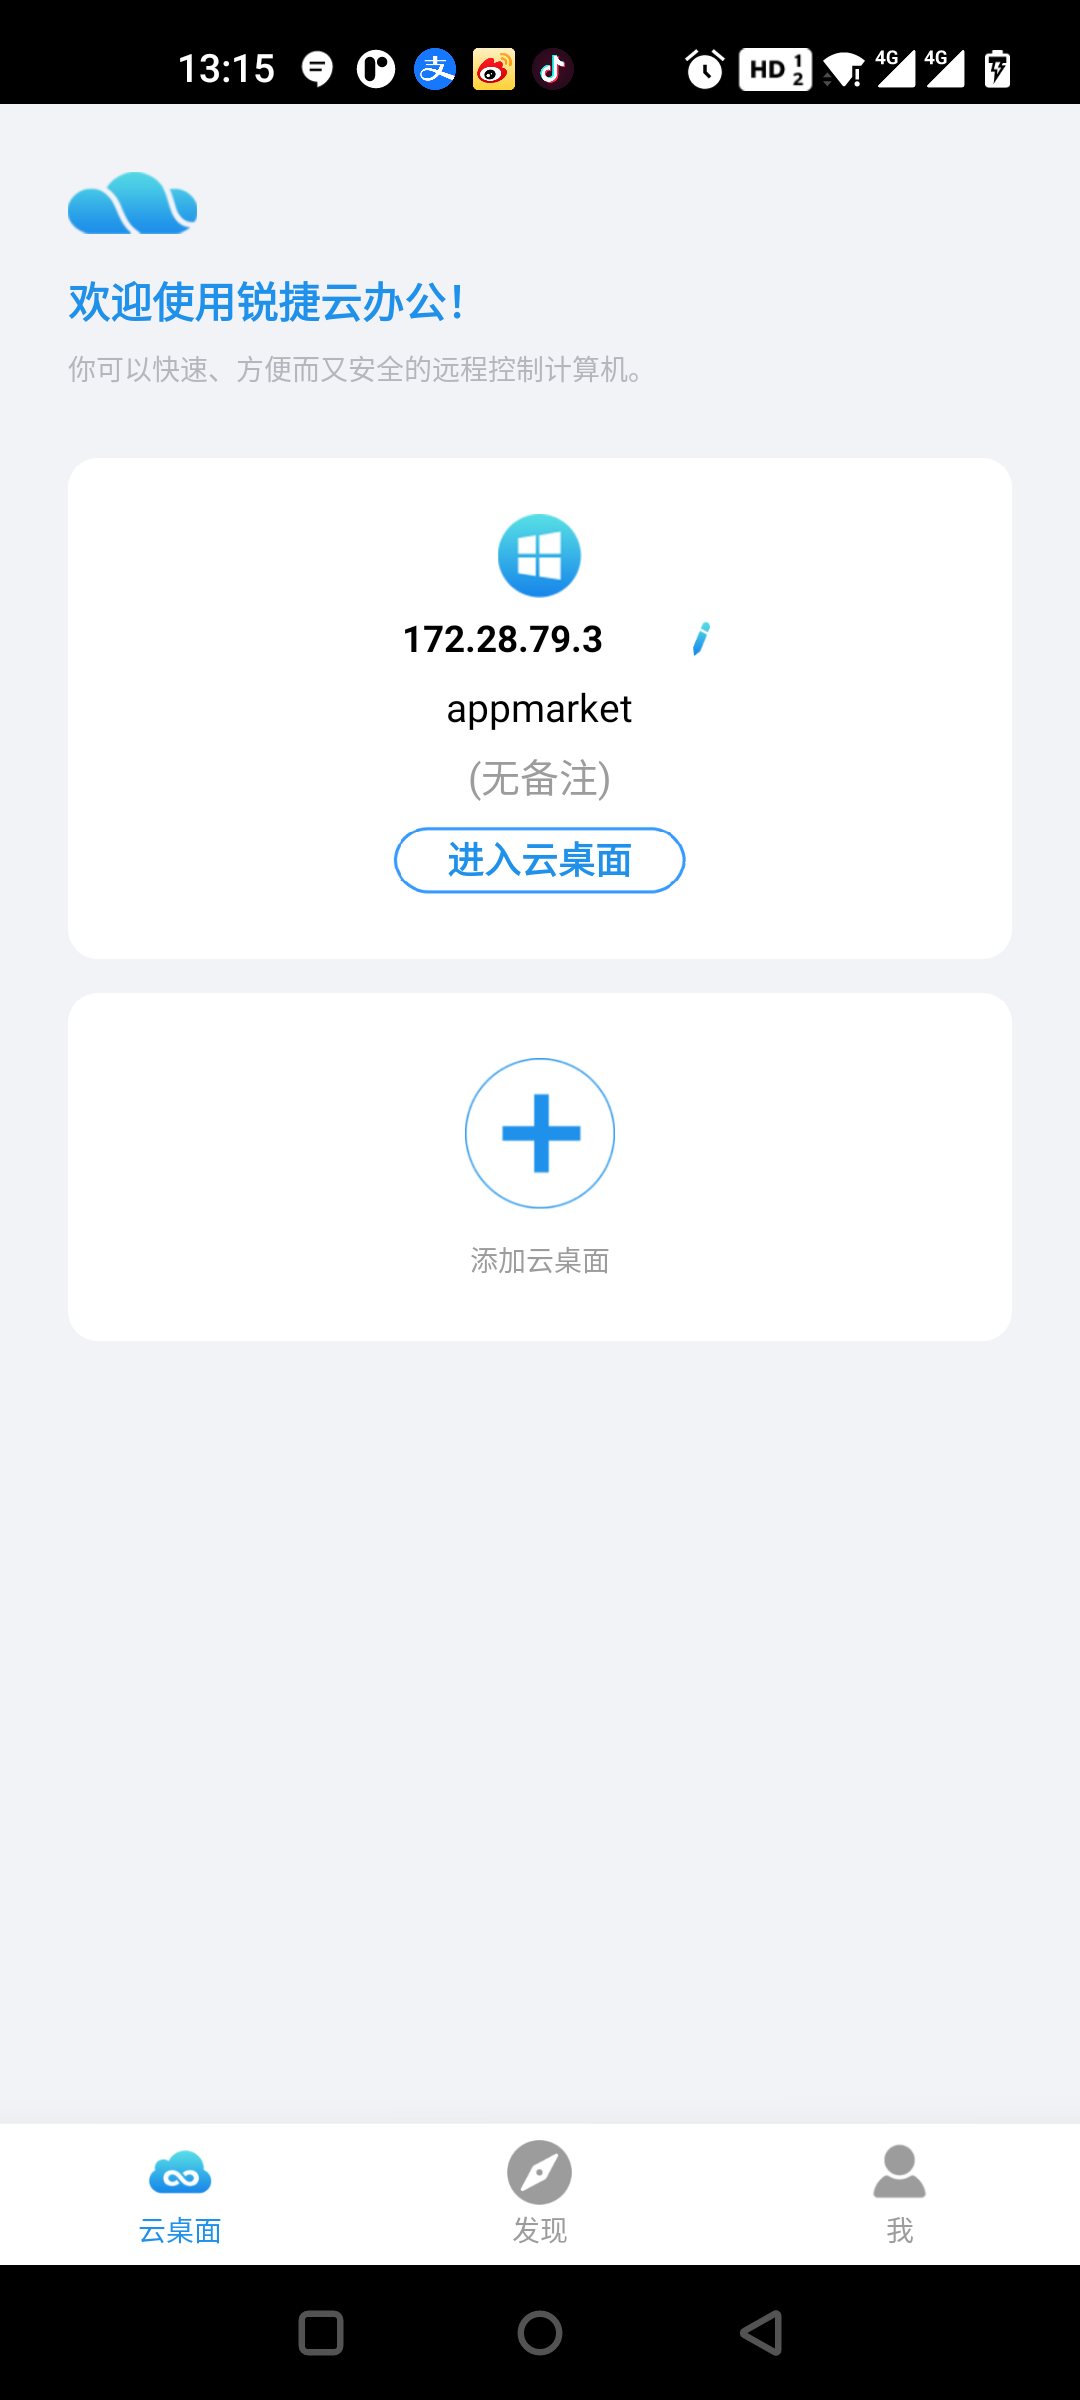 锐捷云办公手机软件app